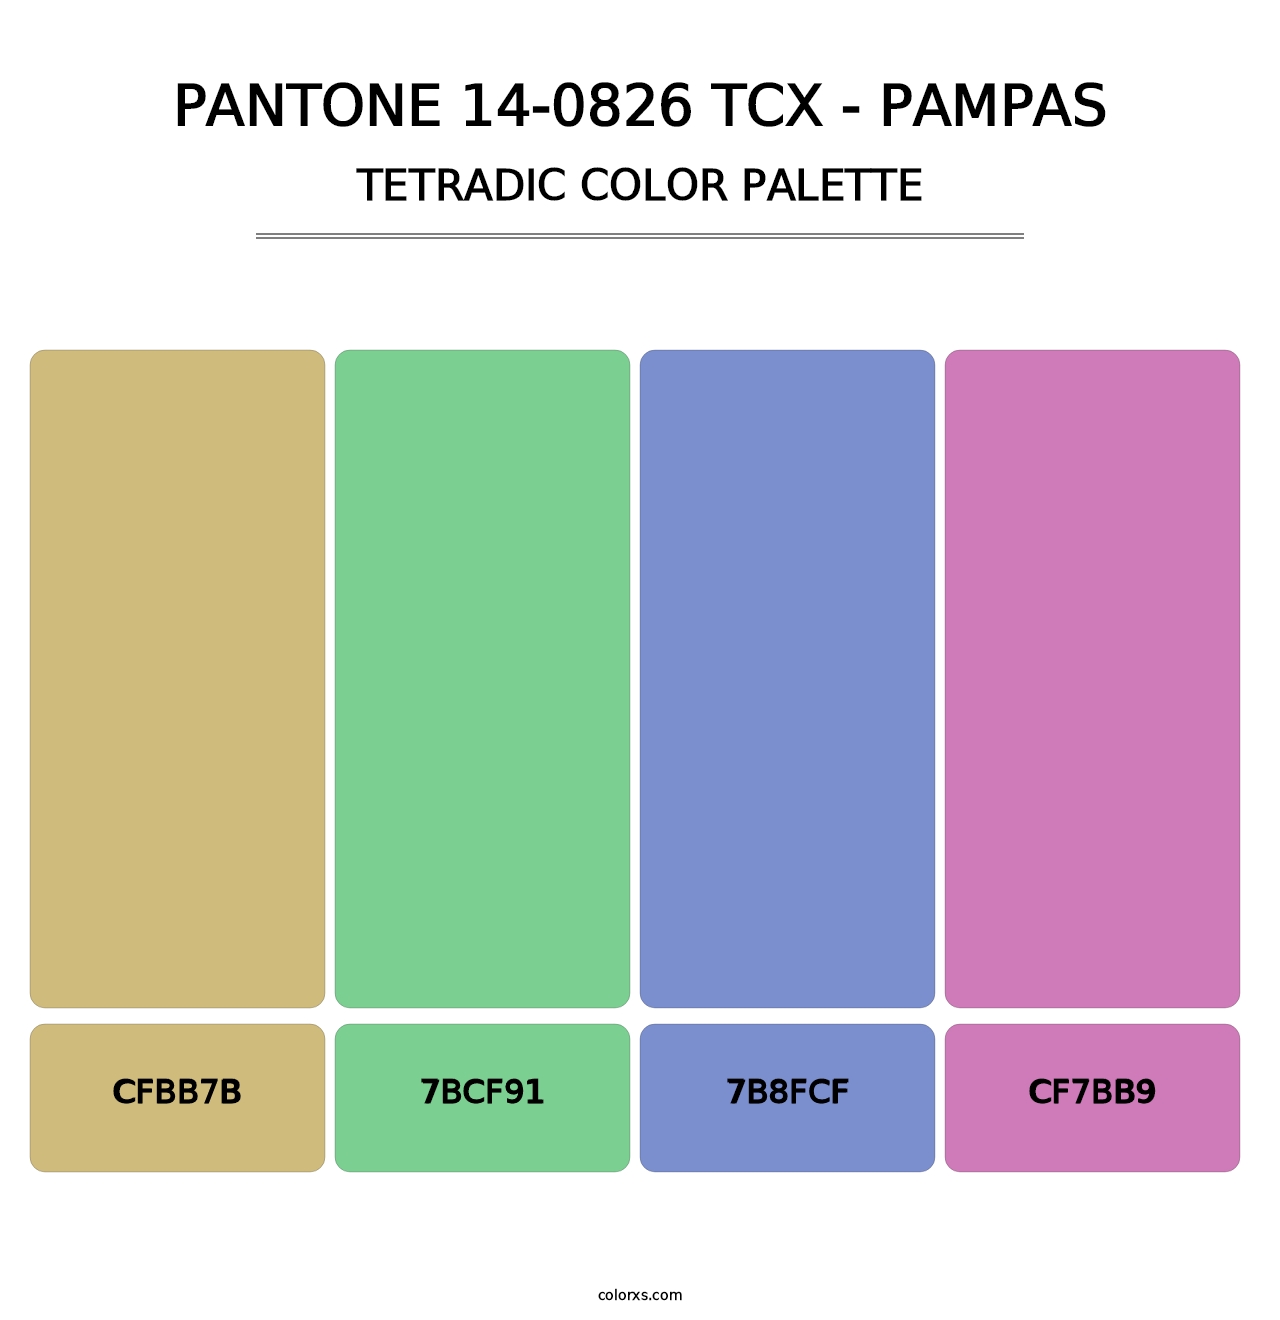 PANTONE 14-0826 TCX - Pampas - Tetradic Color Palette